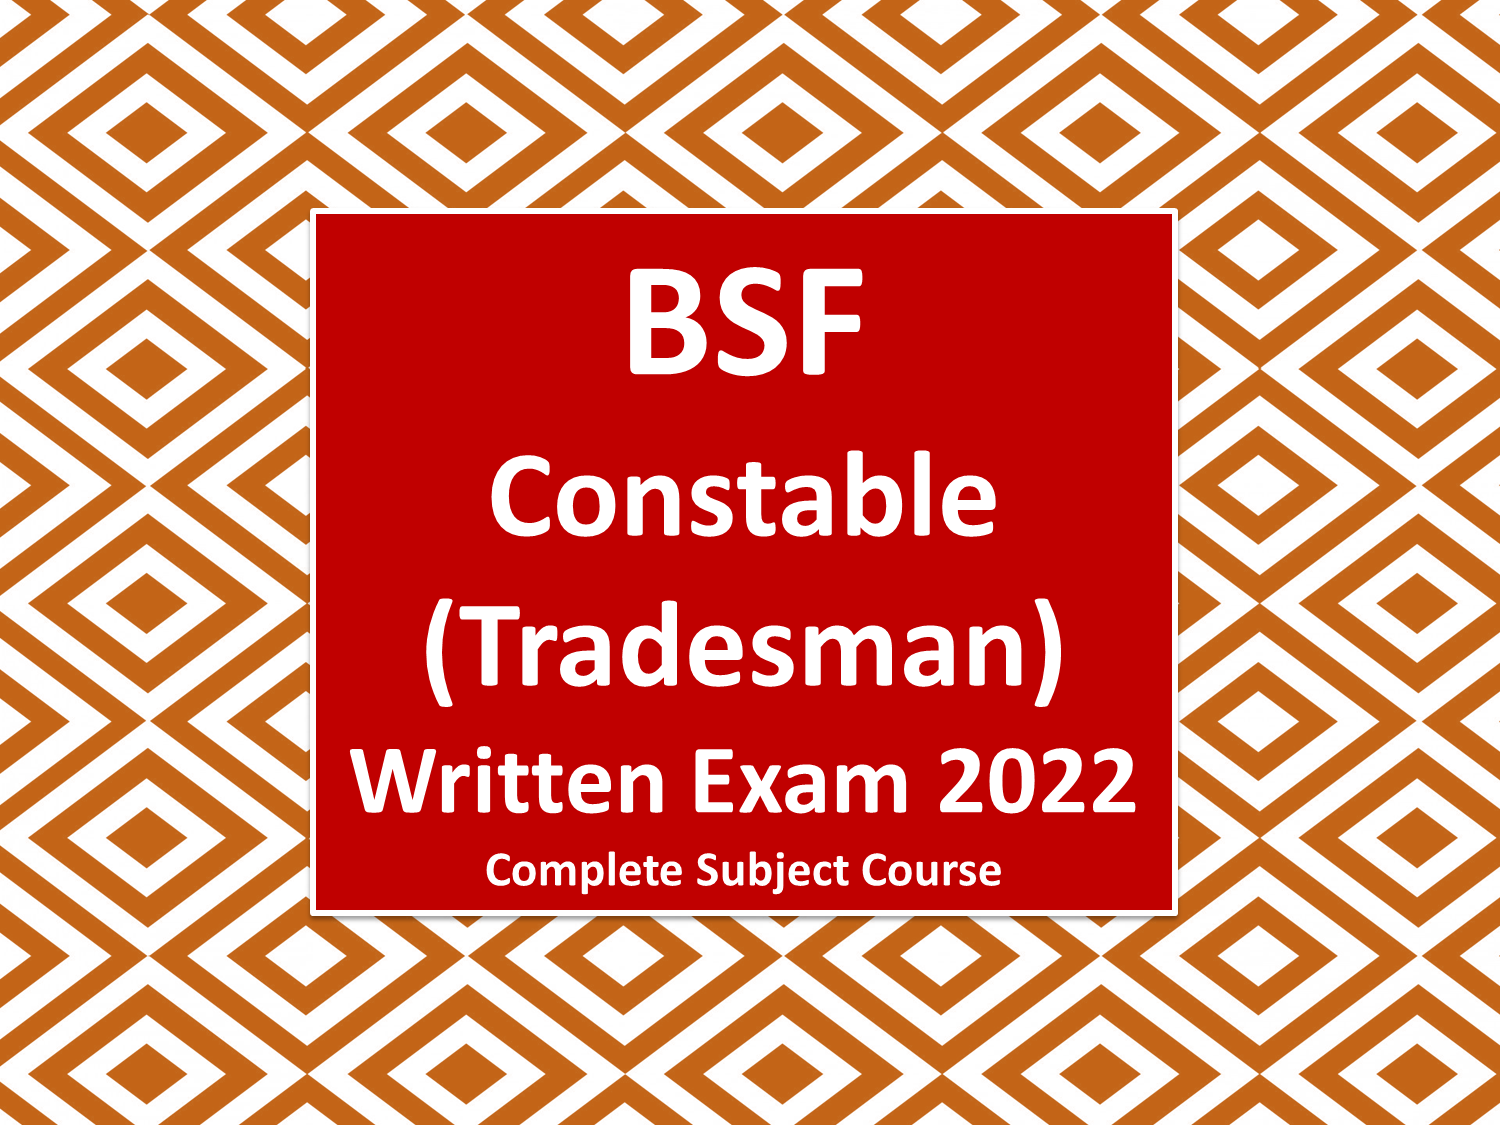 BSF Constable (Tradesman) Written Exam 2023